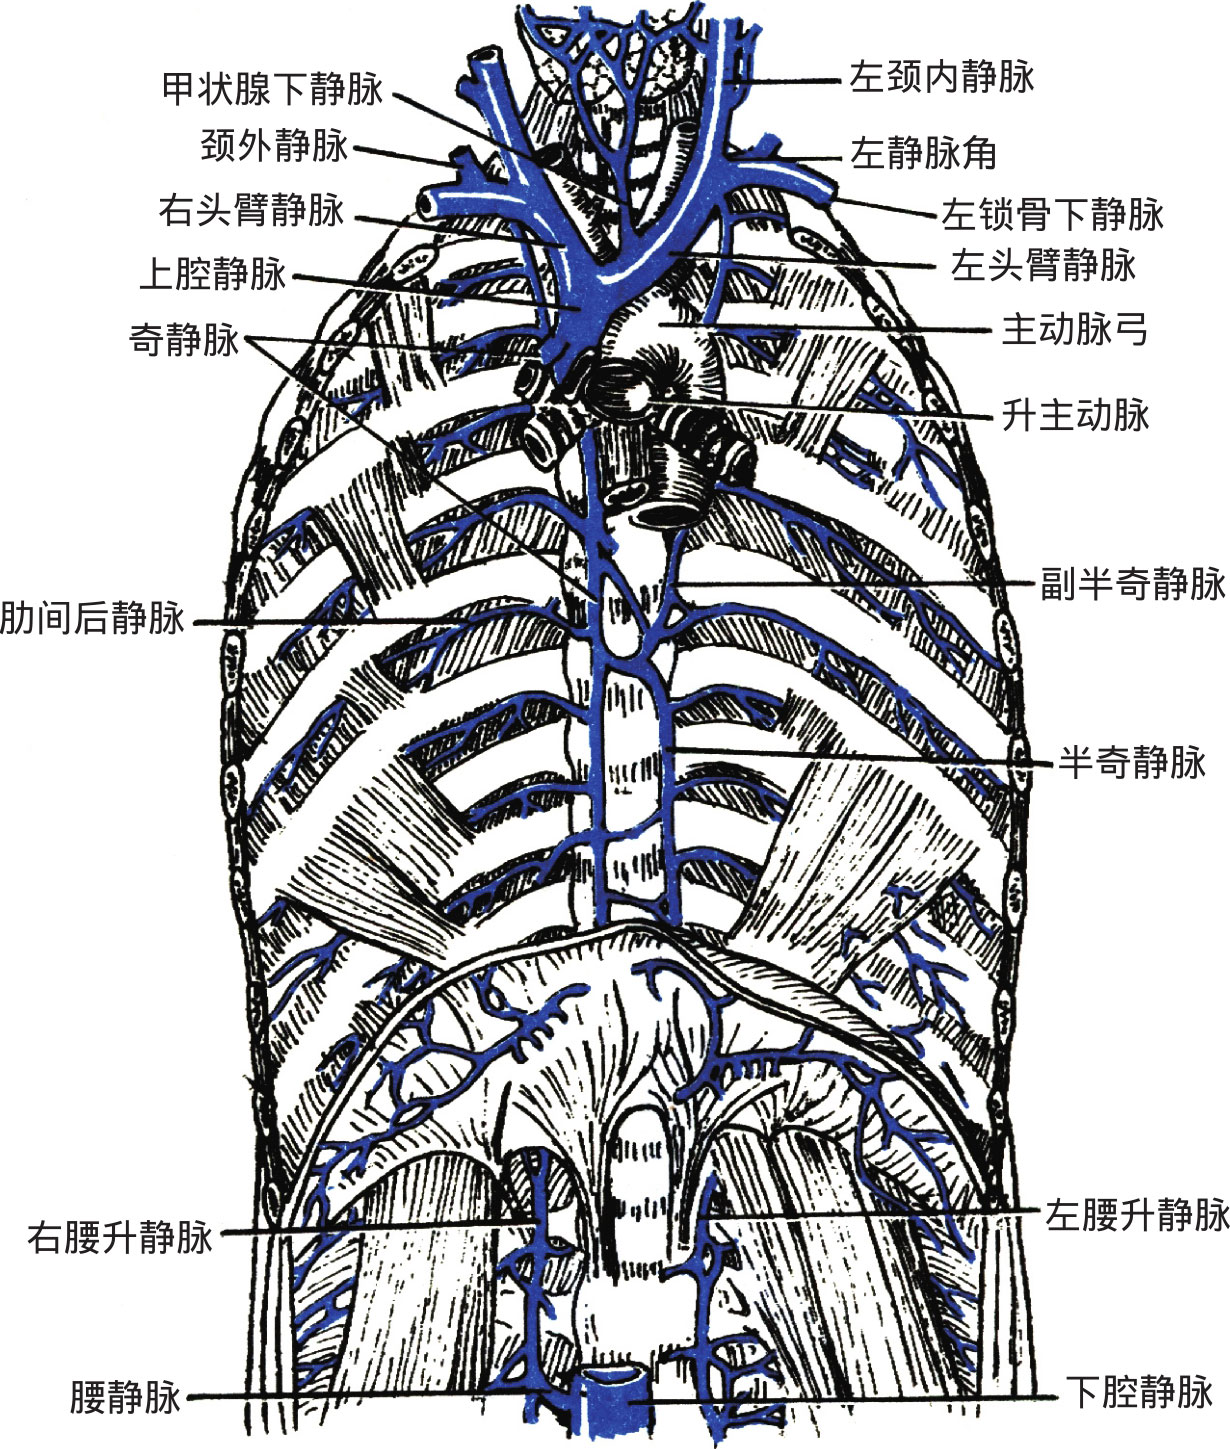 沿脊柱右侧上行,至第4胸椎体高度向前绕右肺根上方注入上腔静脉